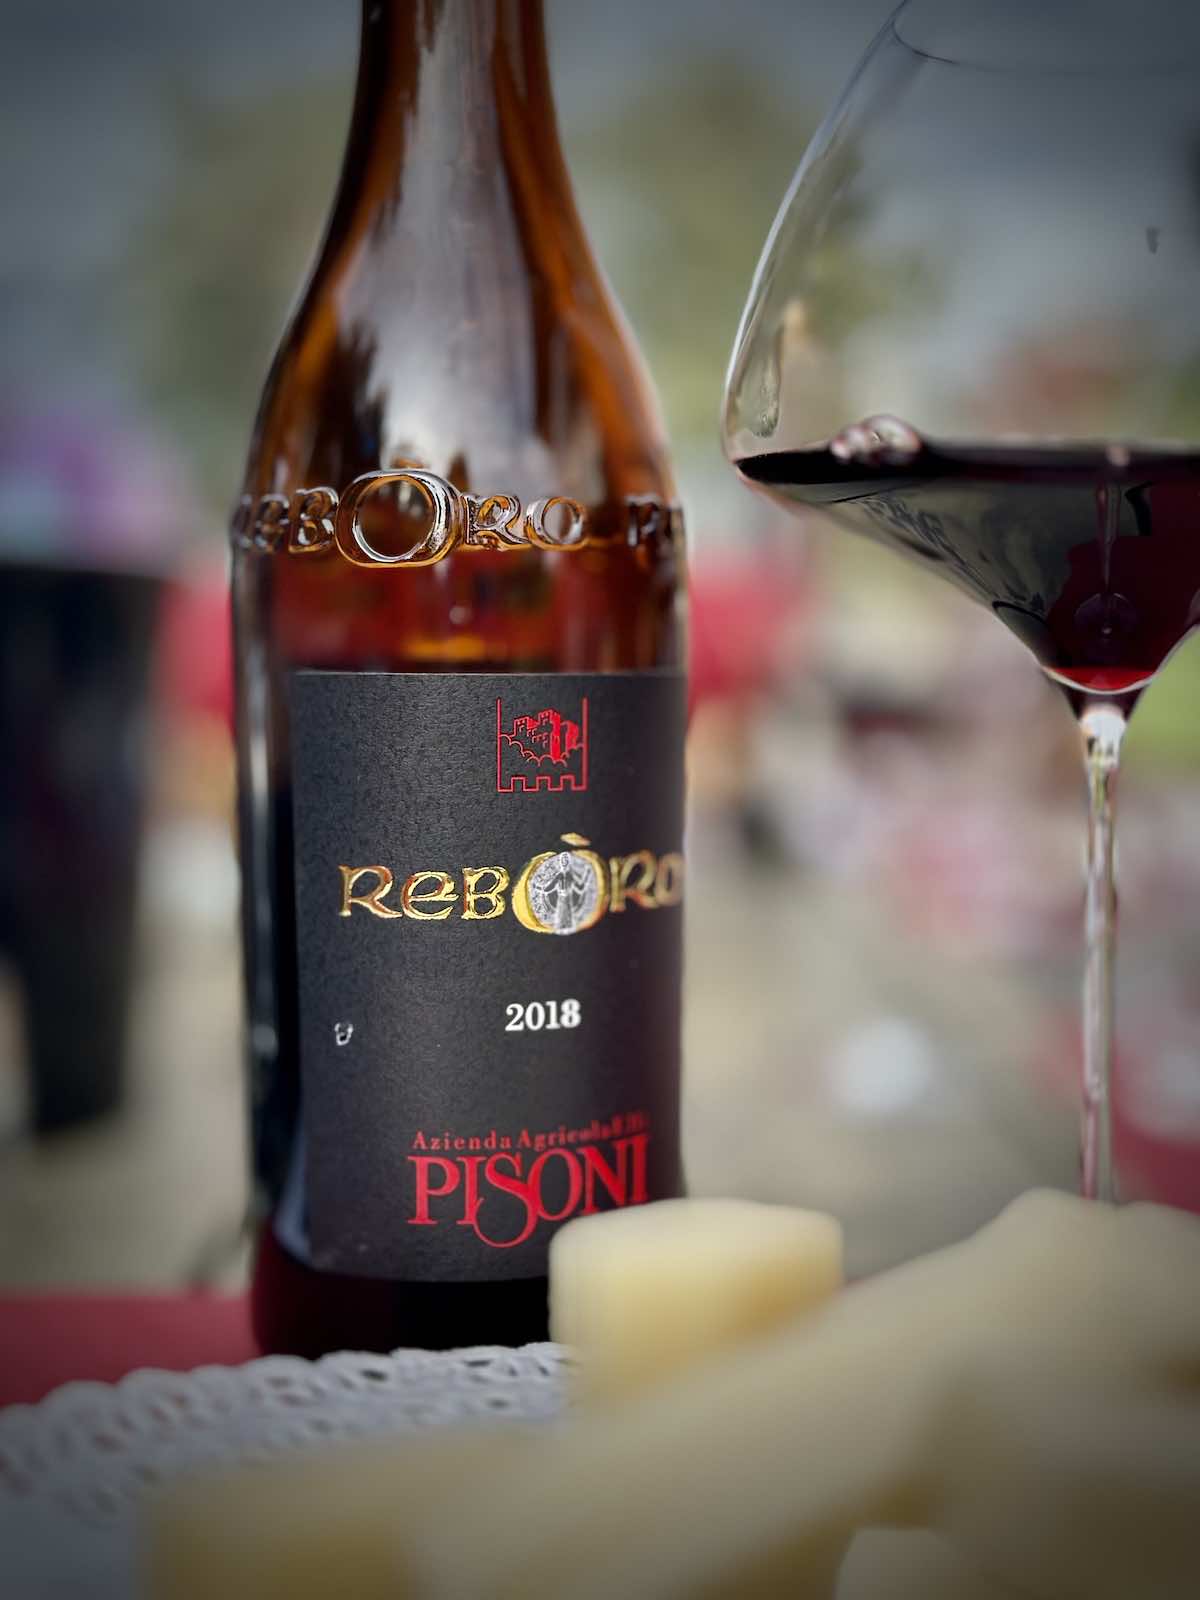 Der Weinanbau hat im Garda Trentino Tradition